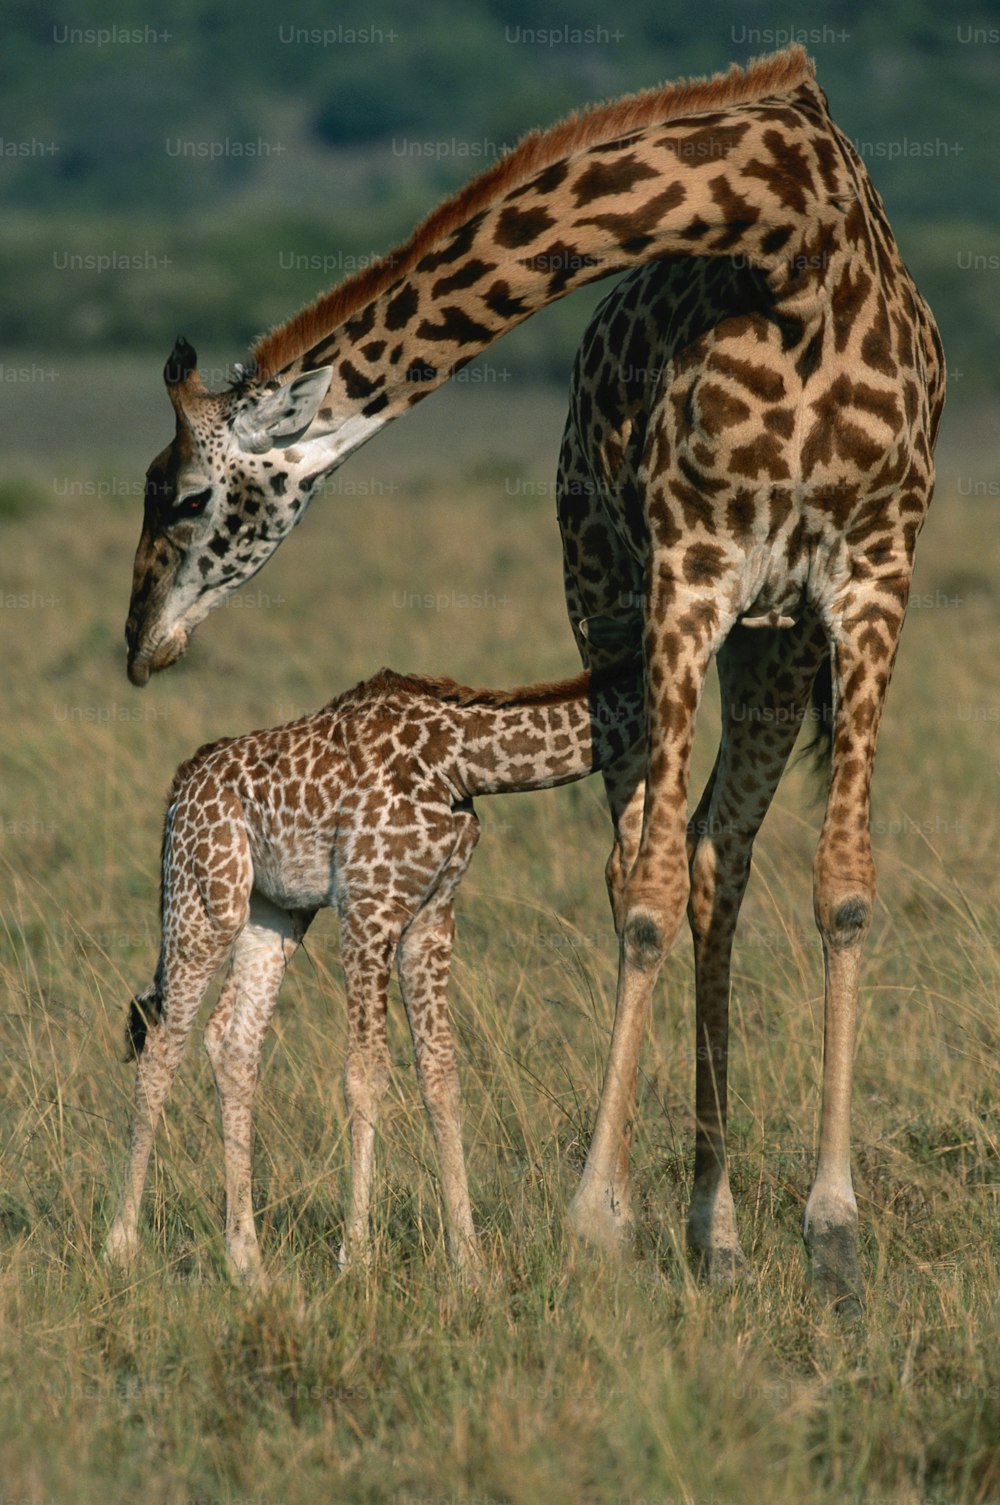 Una jirafa bebé de pie junto a una jirafa adulta